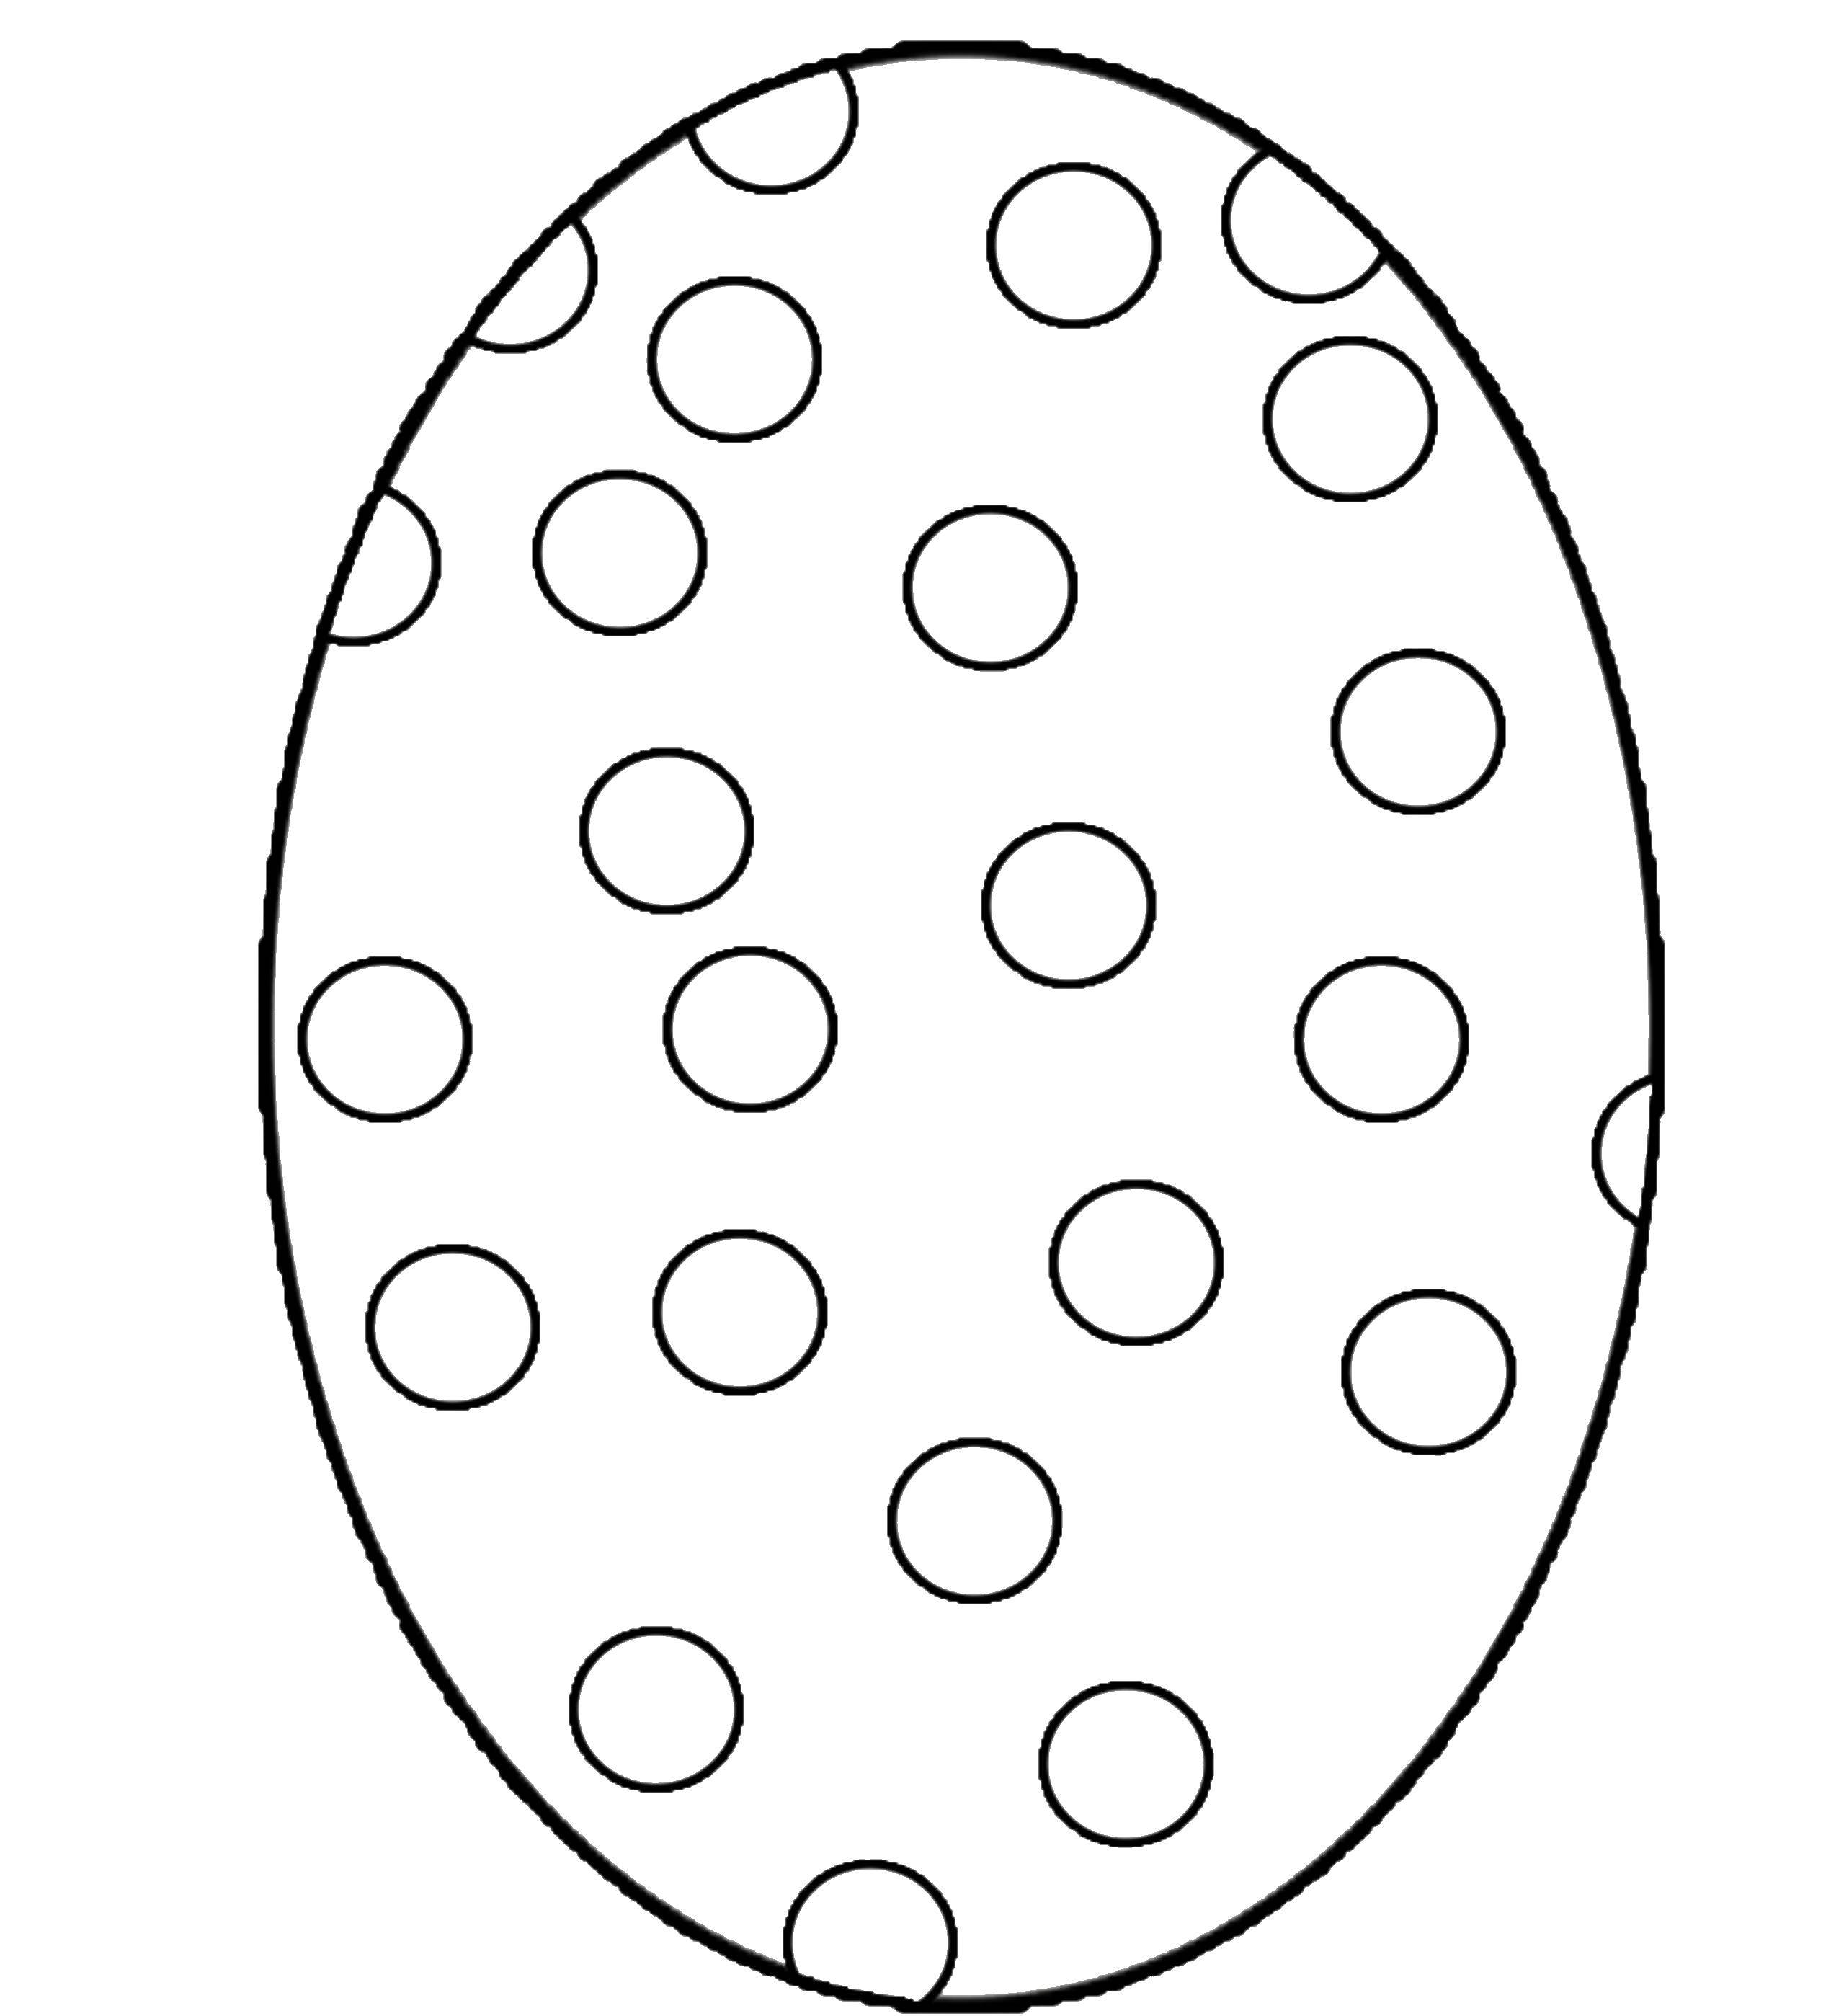 Название: Раскраска Яйцо в горошек. Категория: Узоры для раскрашивания яиц. Теги: горошек, яйца, узорчики.